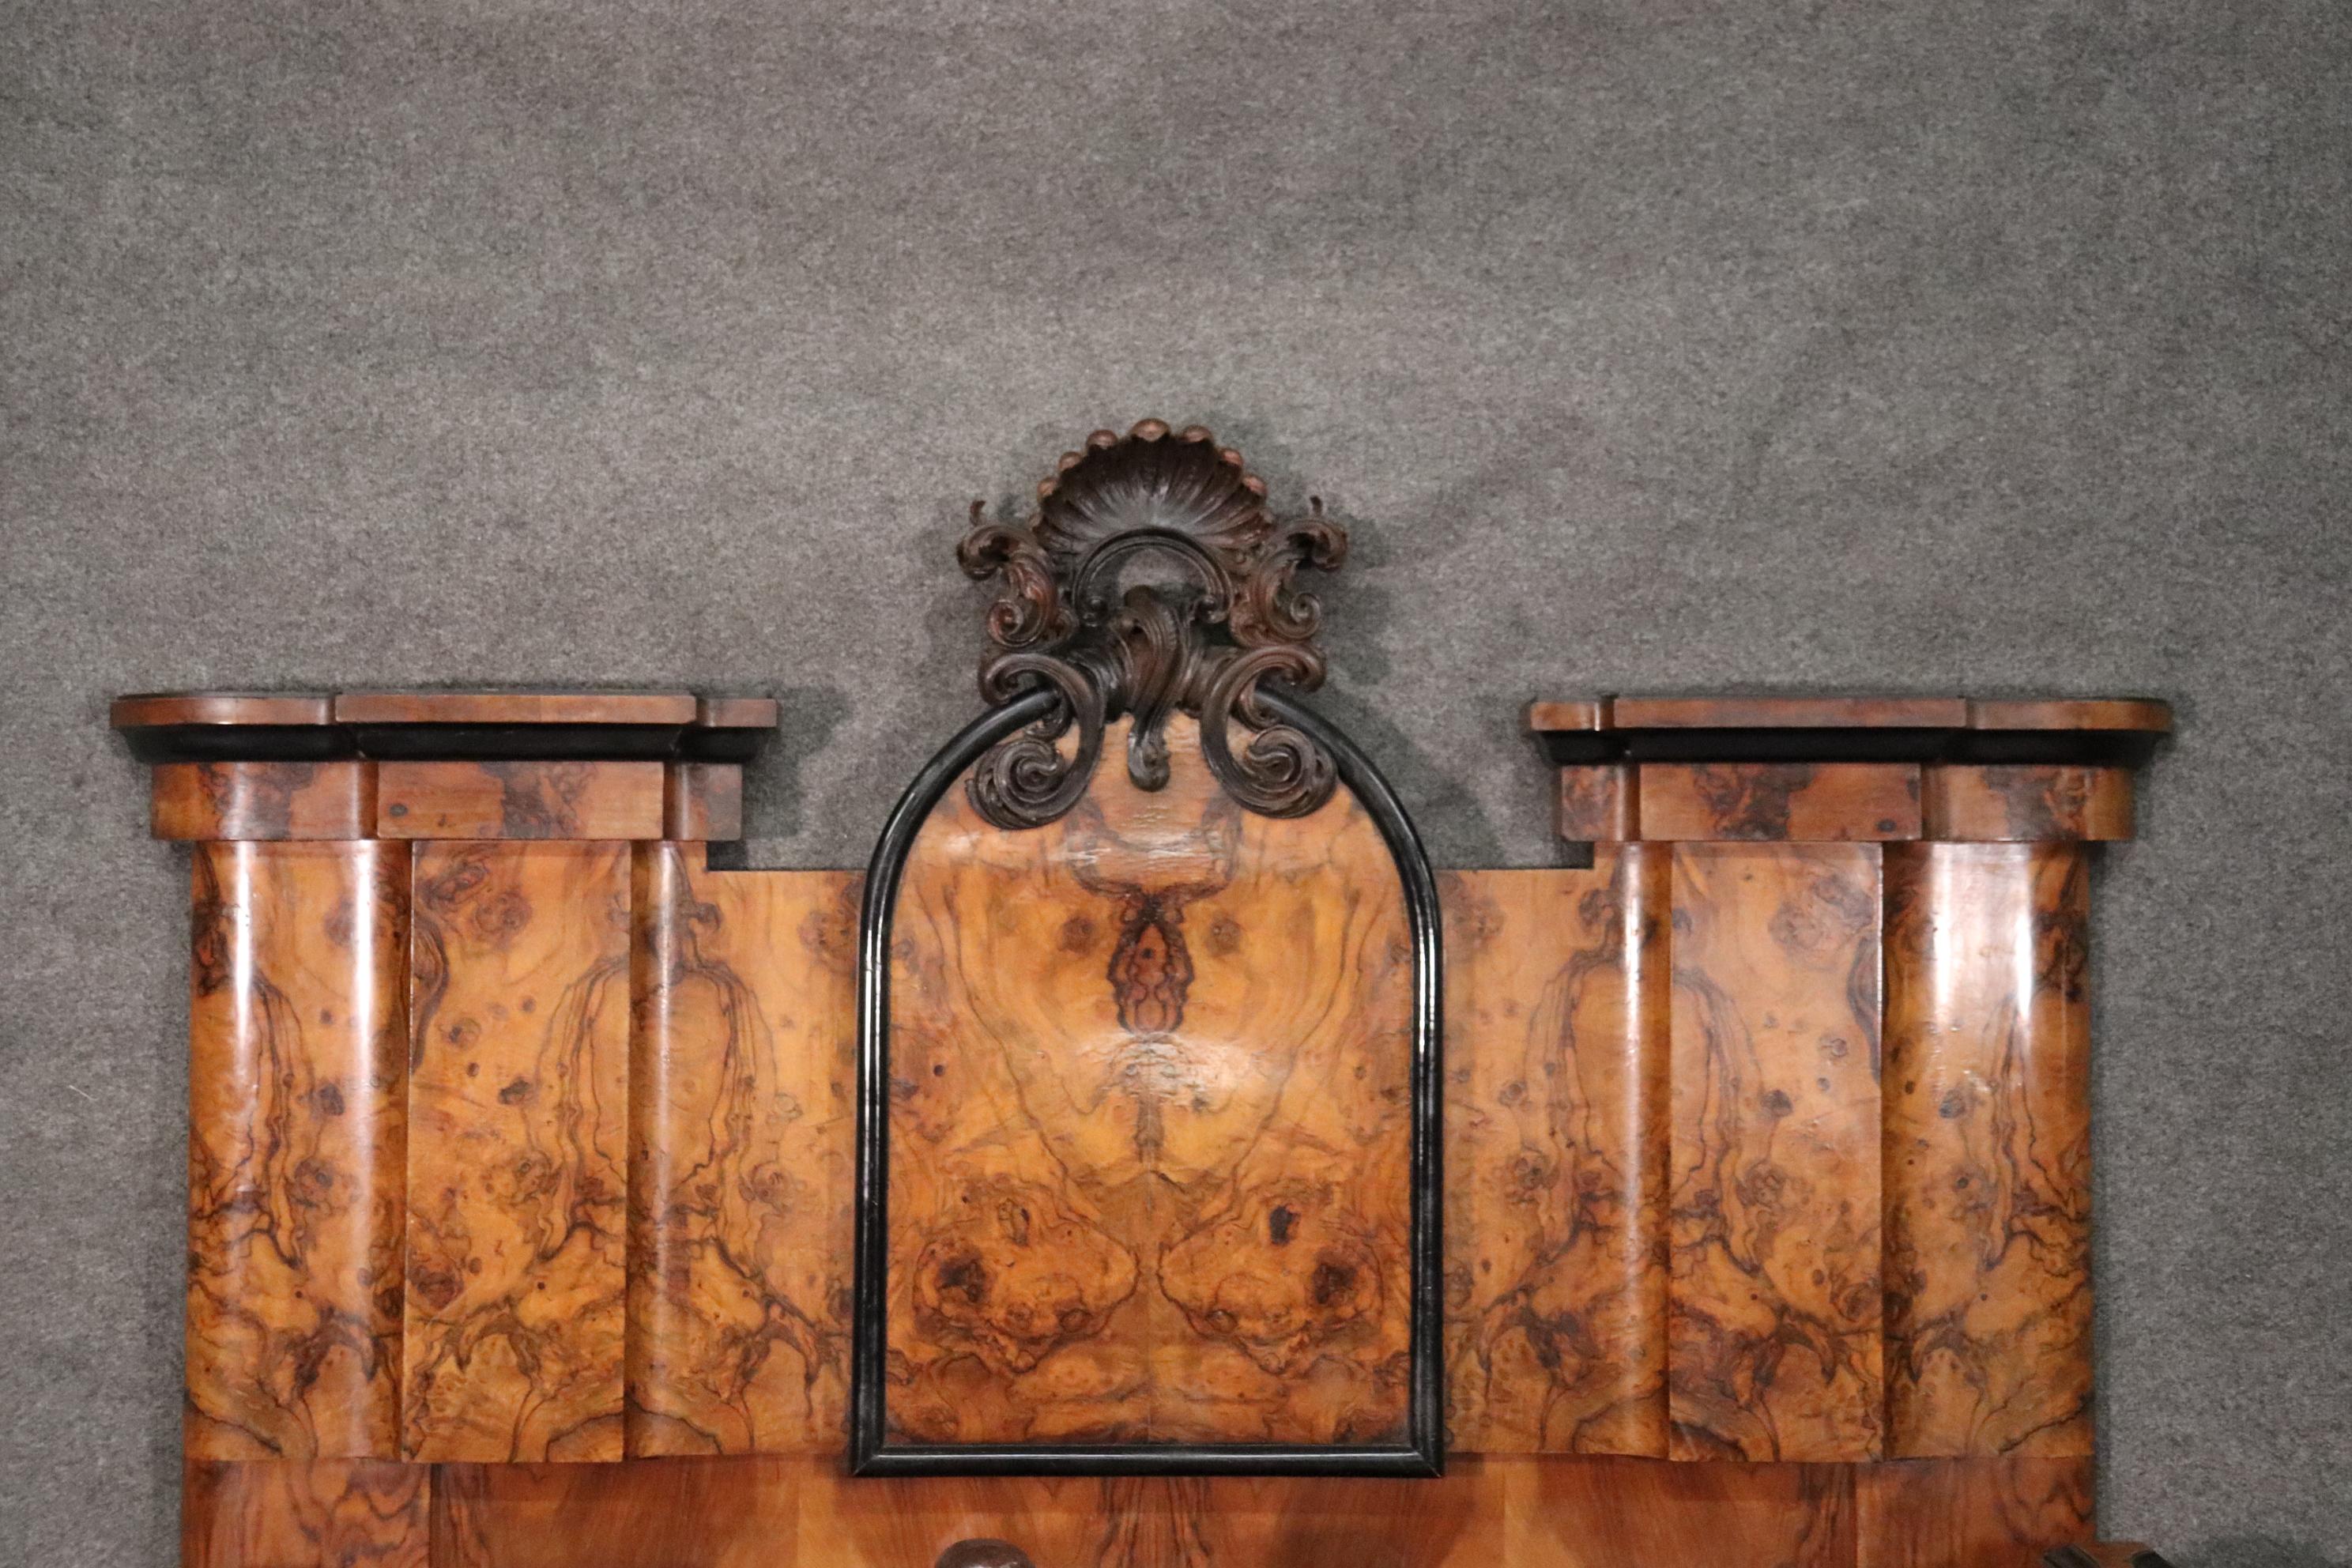 Rococo Revival Italian Baroque Rococo Circassian Walnut Carved Putti Cherubs Near King Size Bed